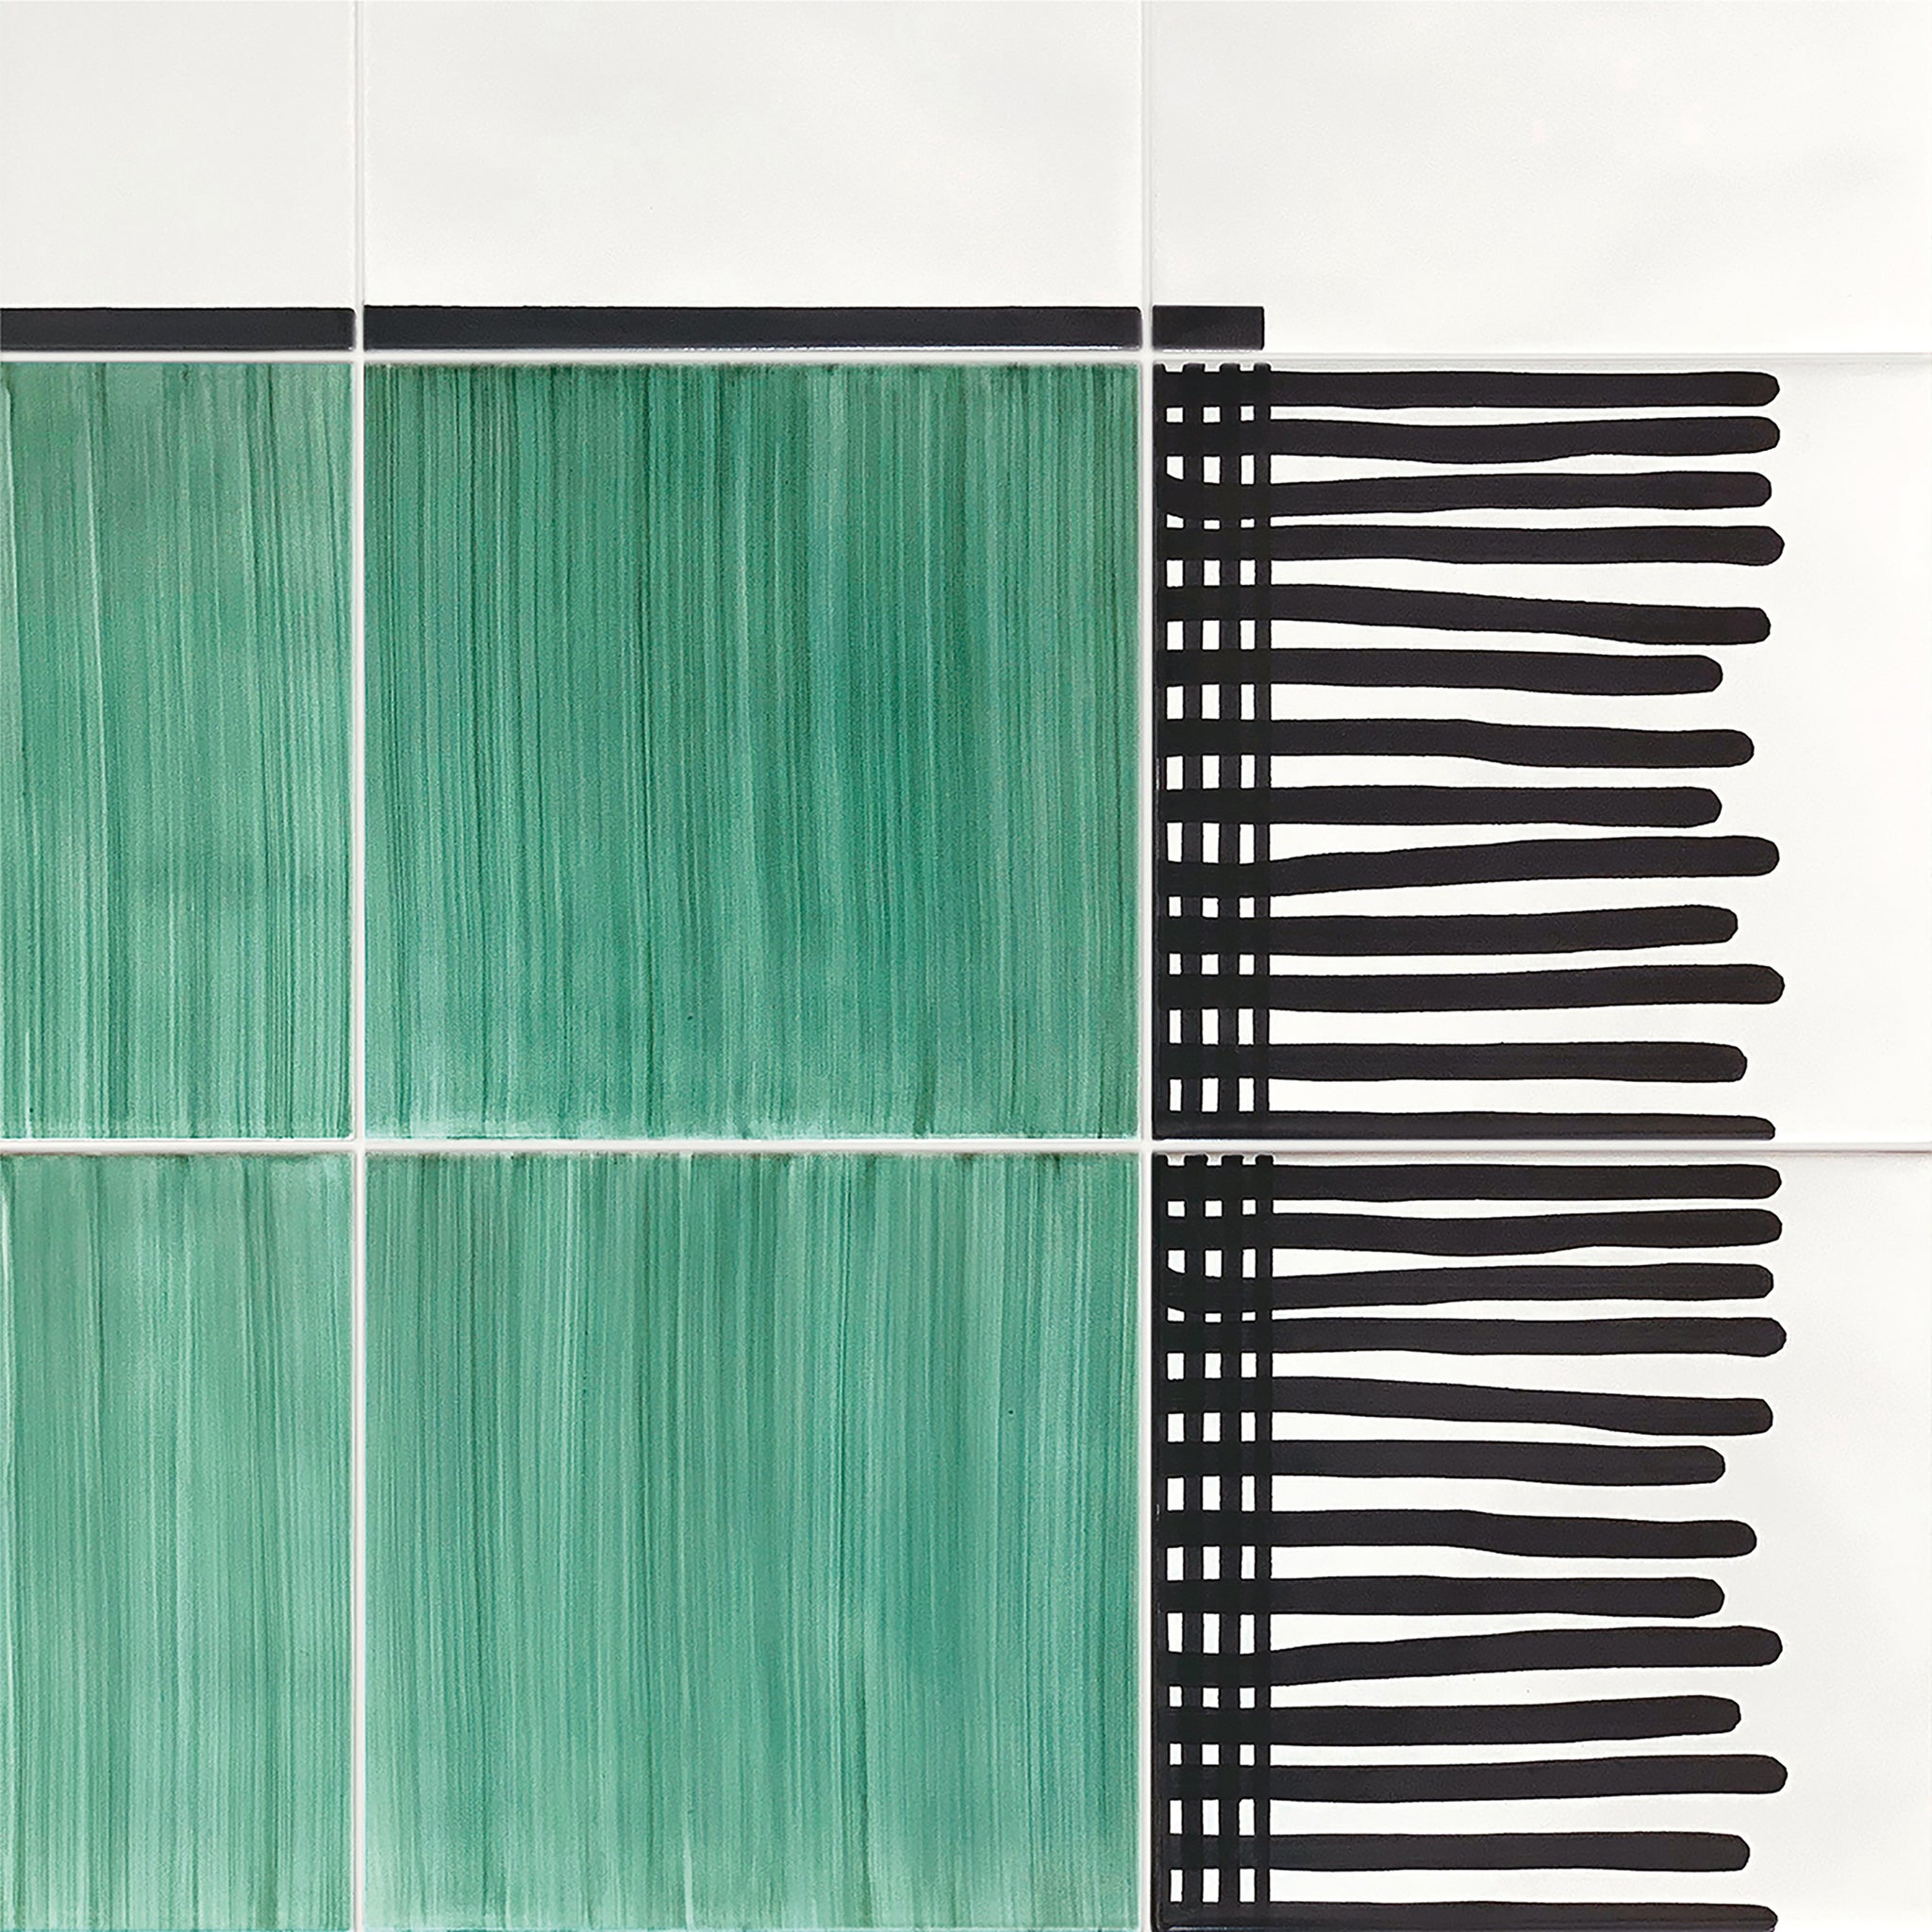 Carpet Total Green Ceramic Composition by Giuliano Andrea dell’Uva 120 X 80 with black border - Alternative view 2